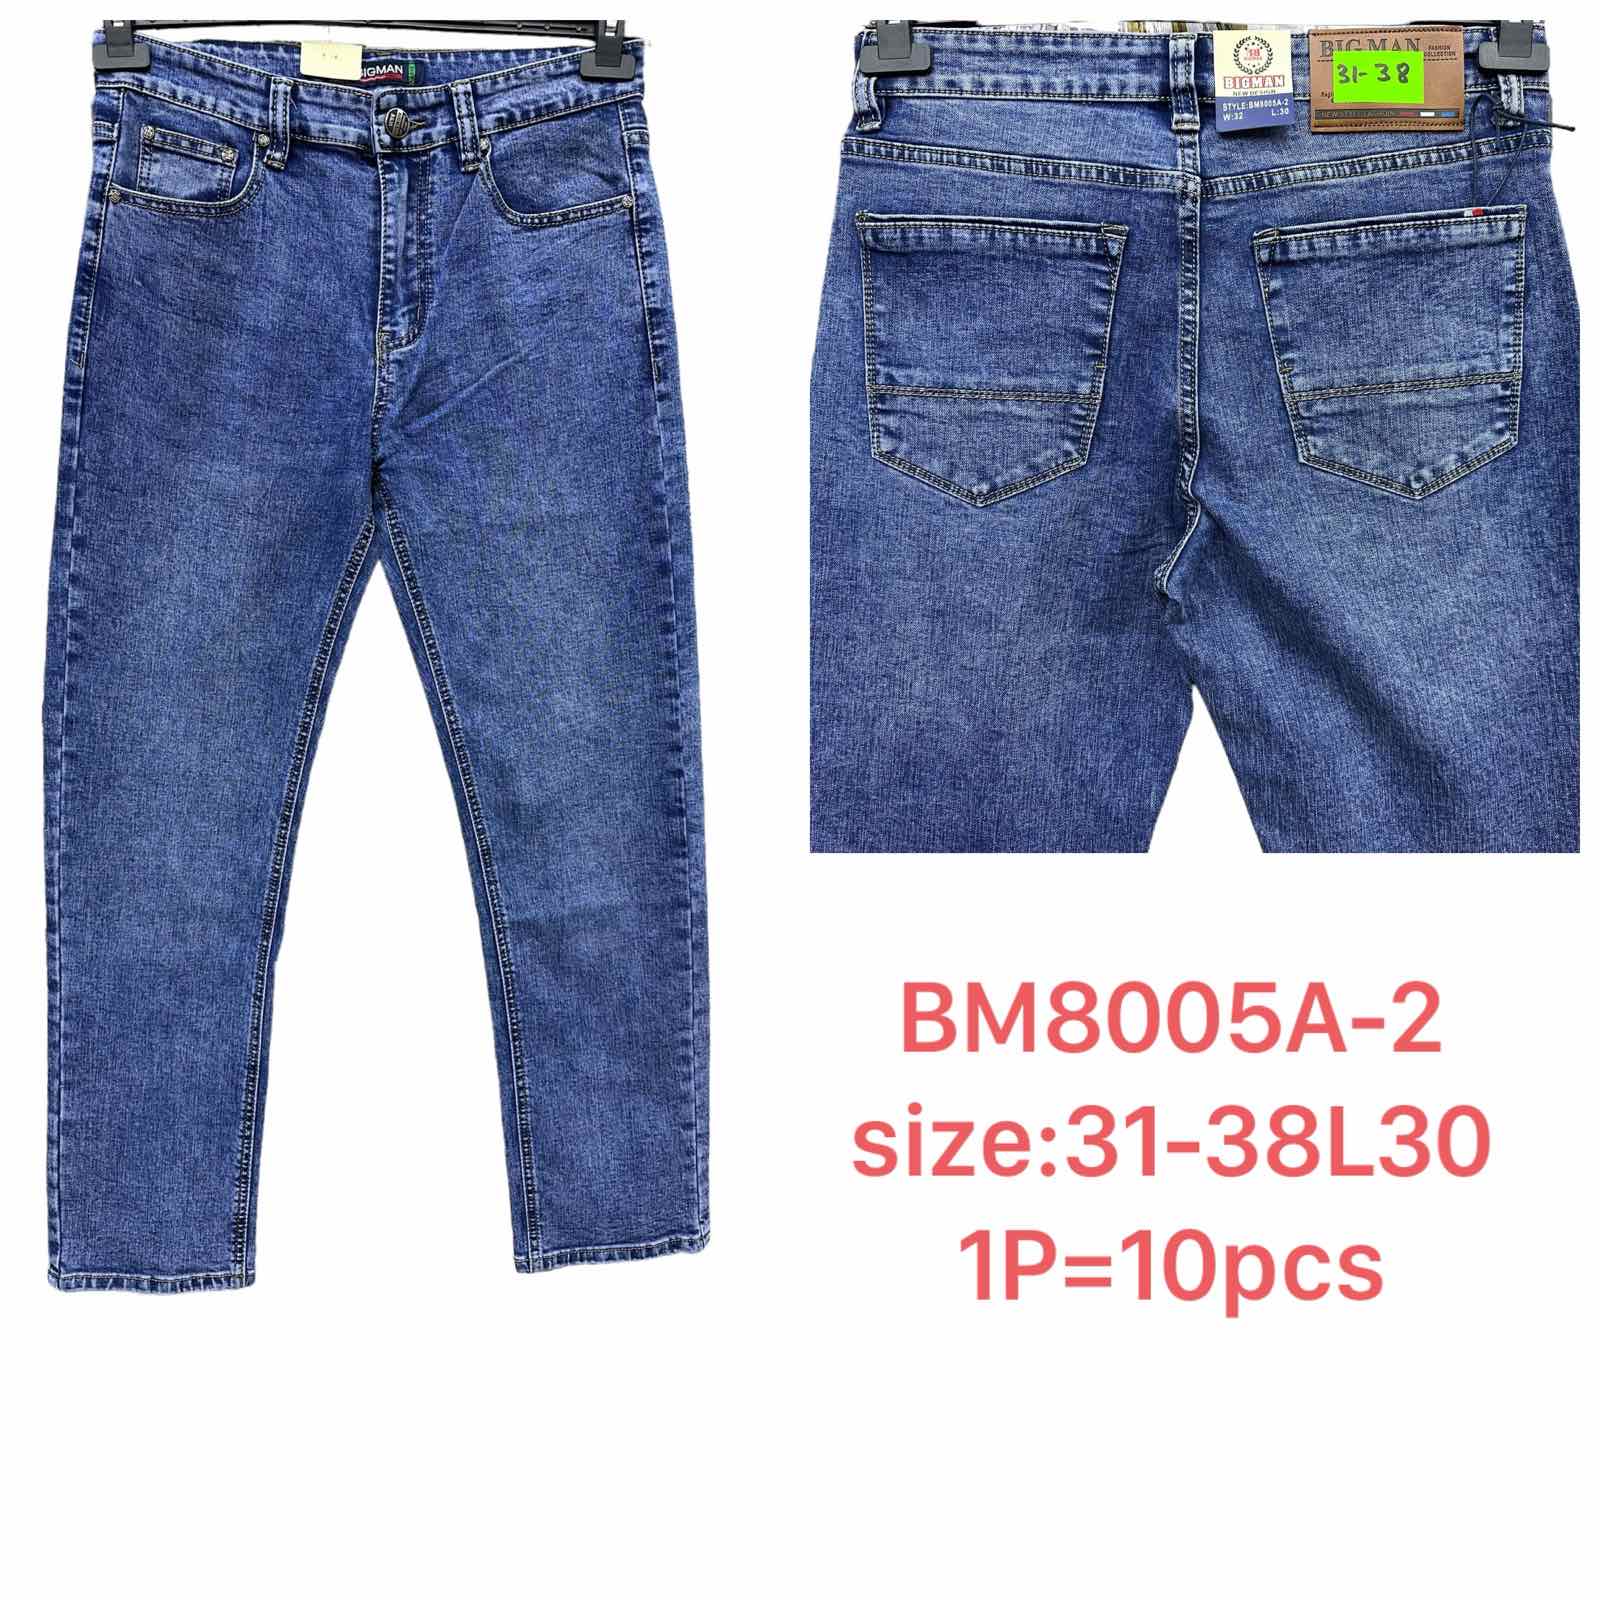 Spodnie meskie jeans  Roz 31-38 L30 Paczka 10szt